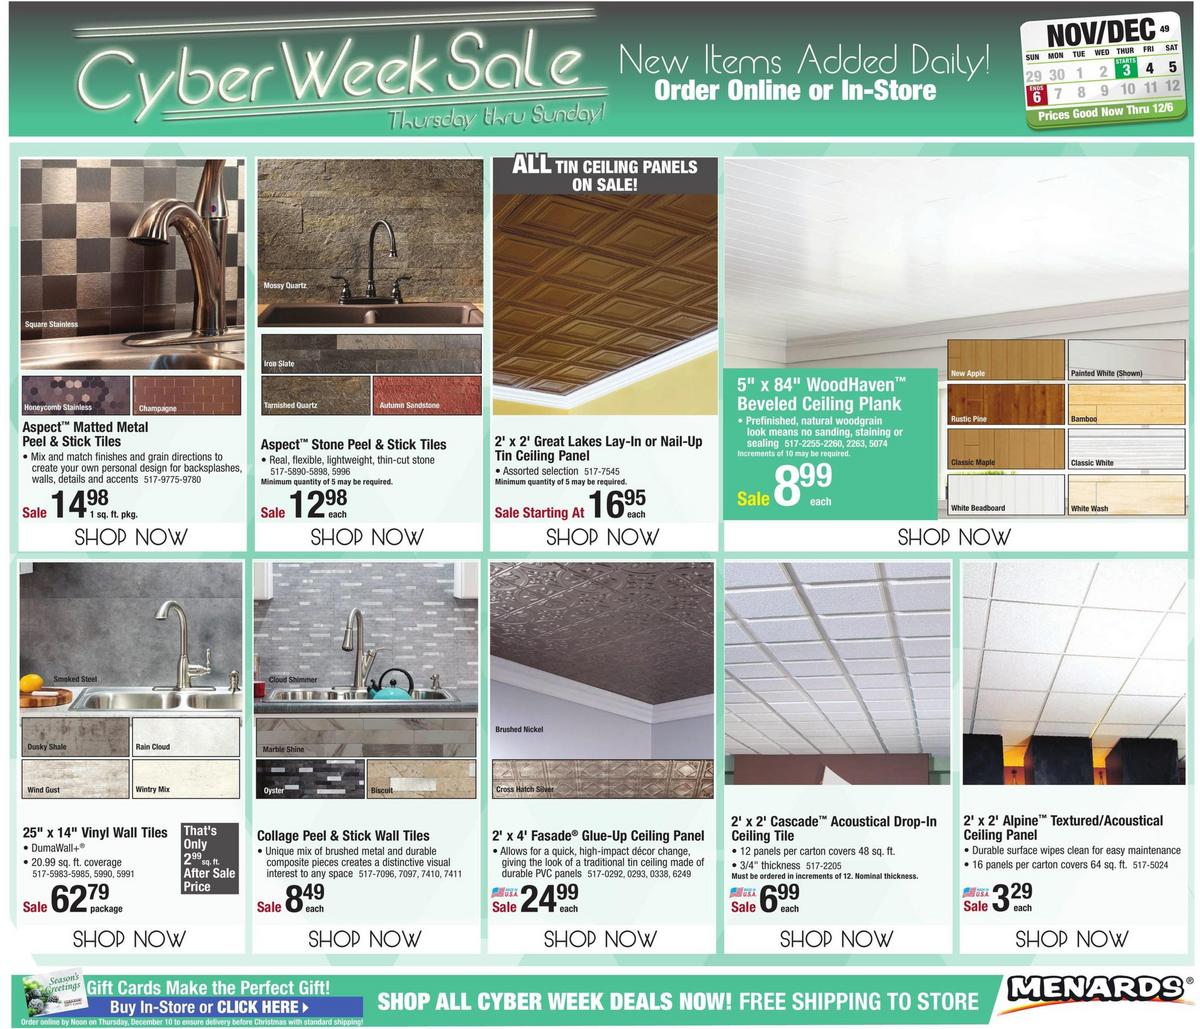 Menards Cyber Week Sale Weekly Ad from November 30